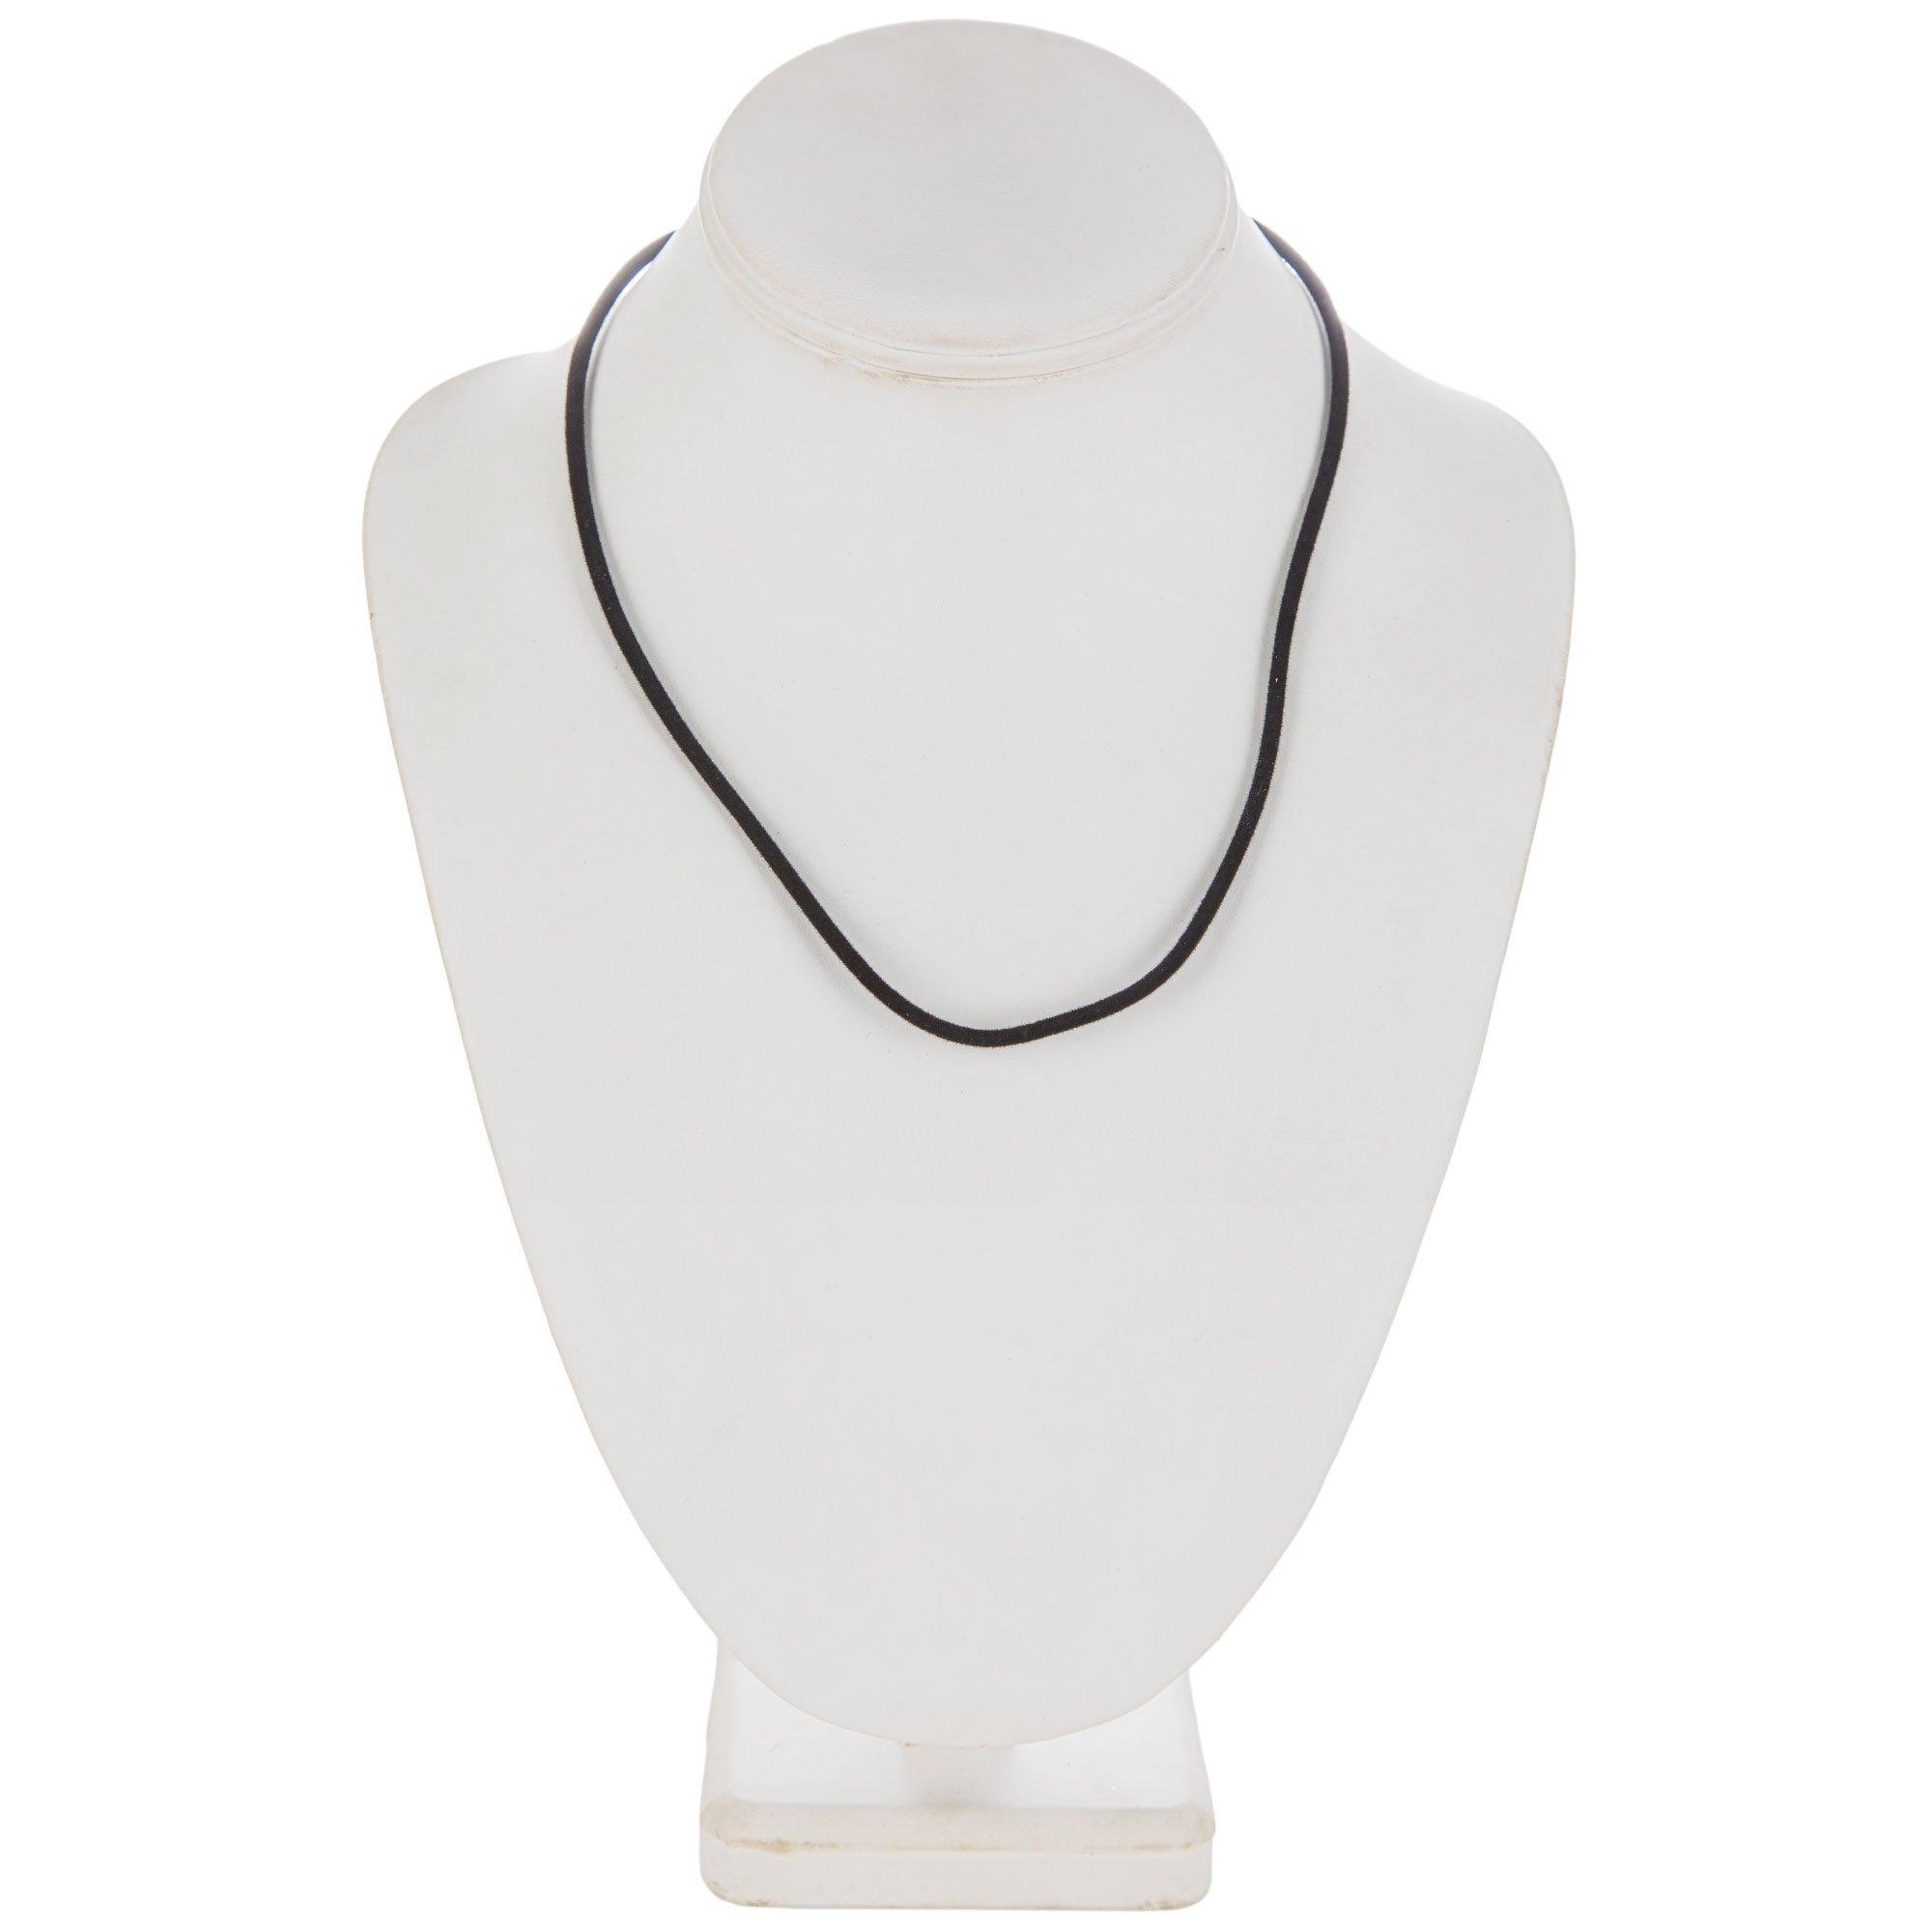 Bead Landing® Black Velvet Cord Necklace